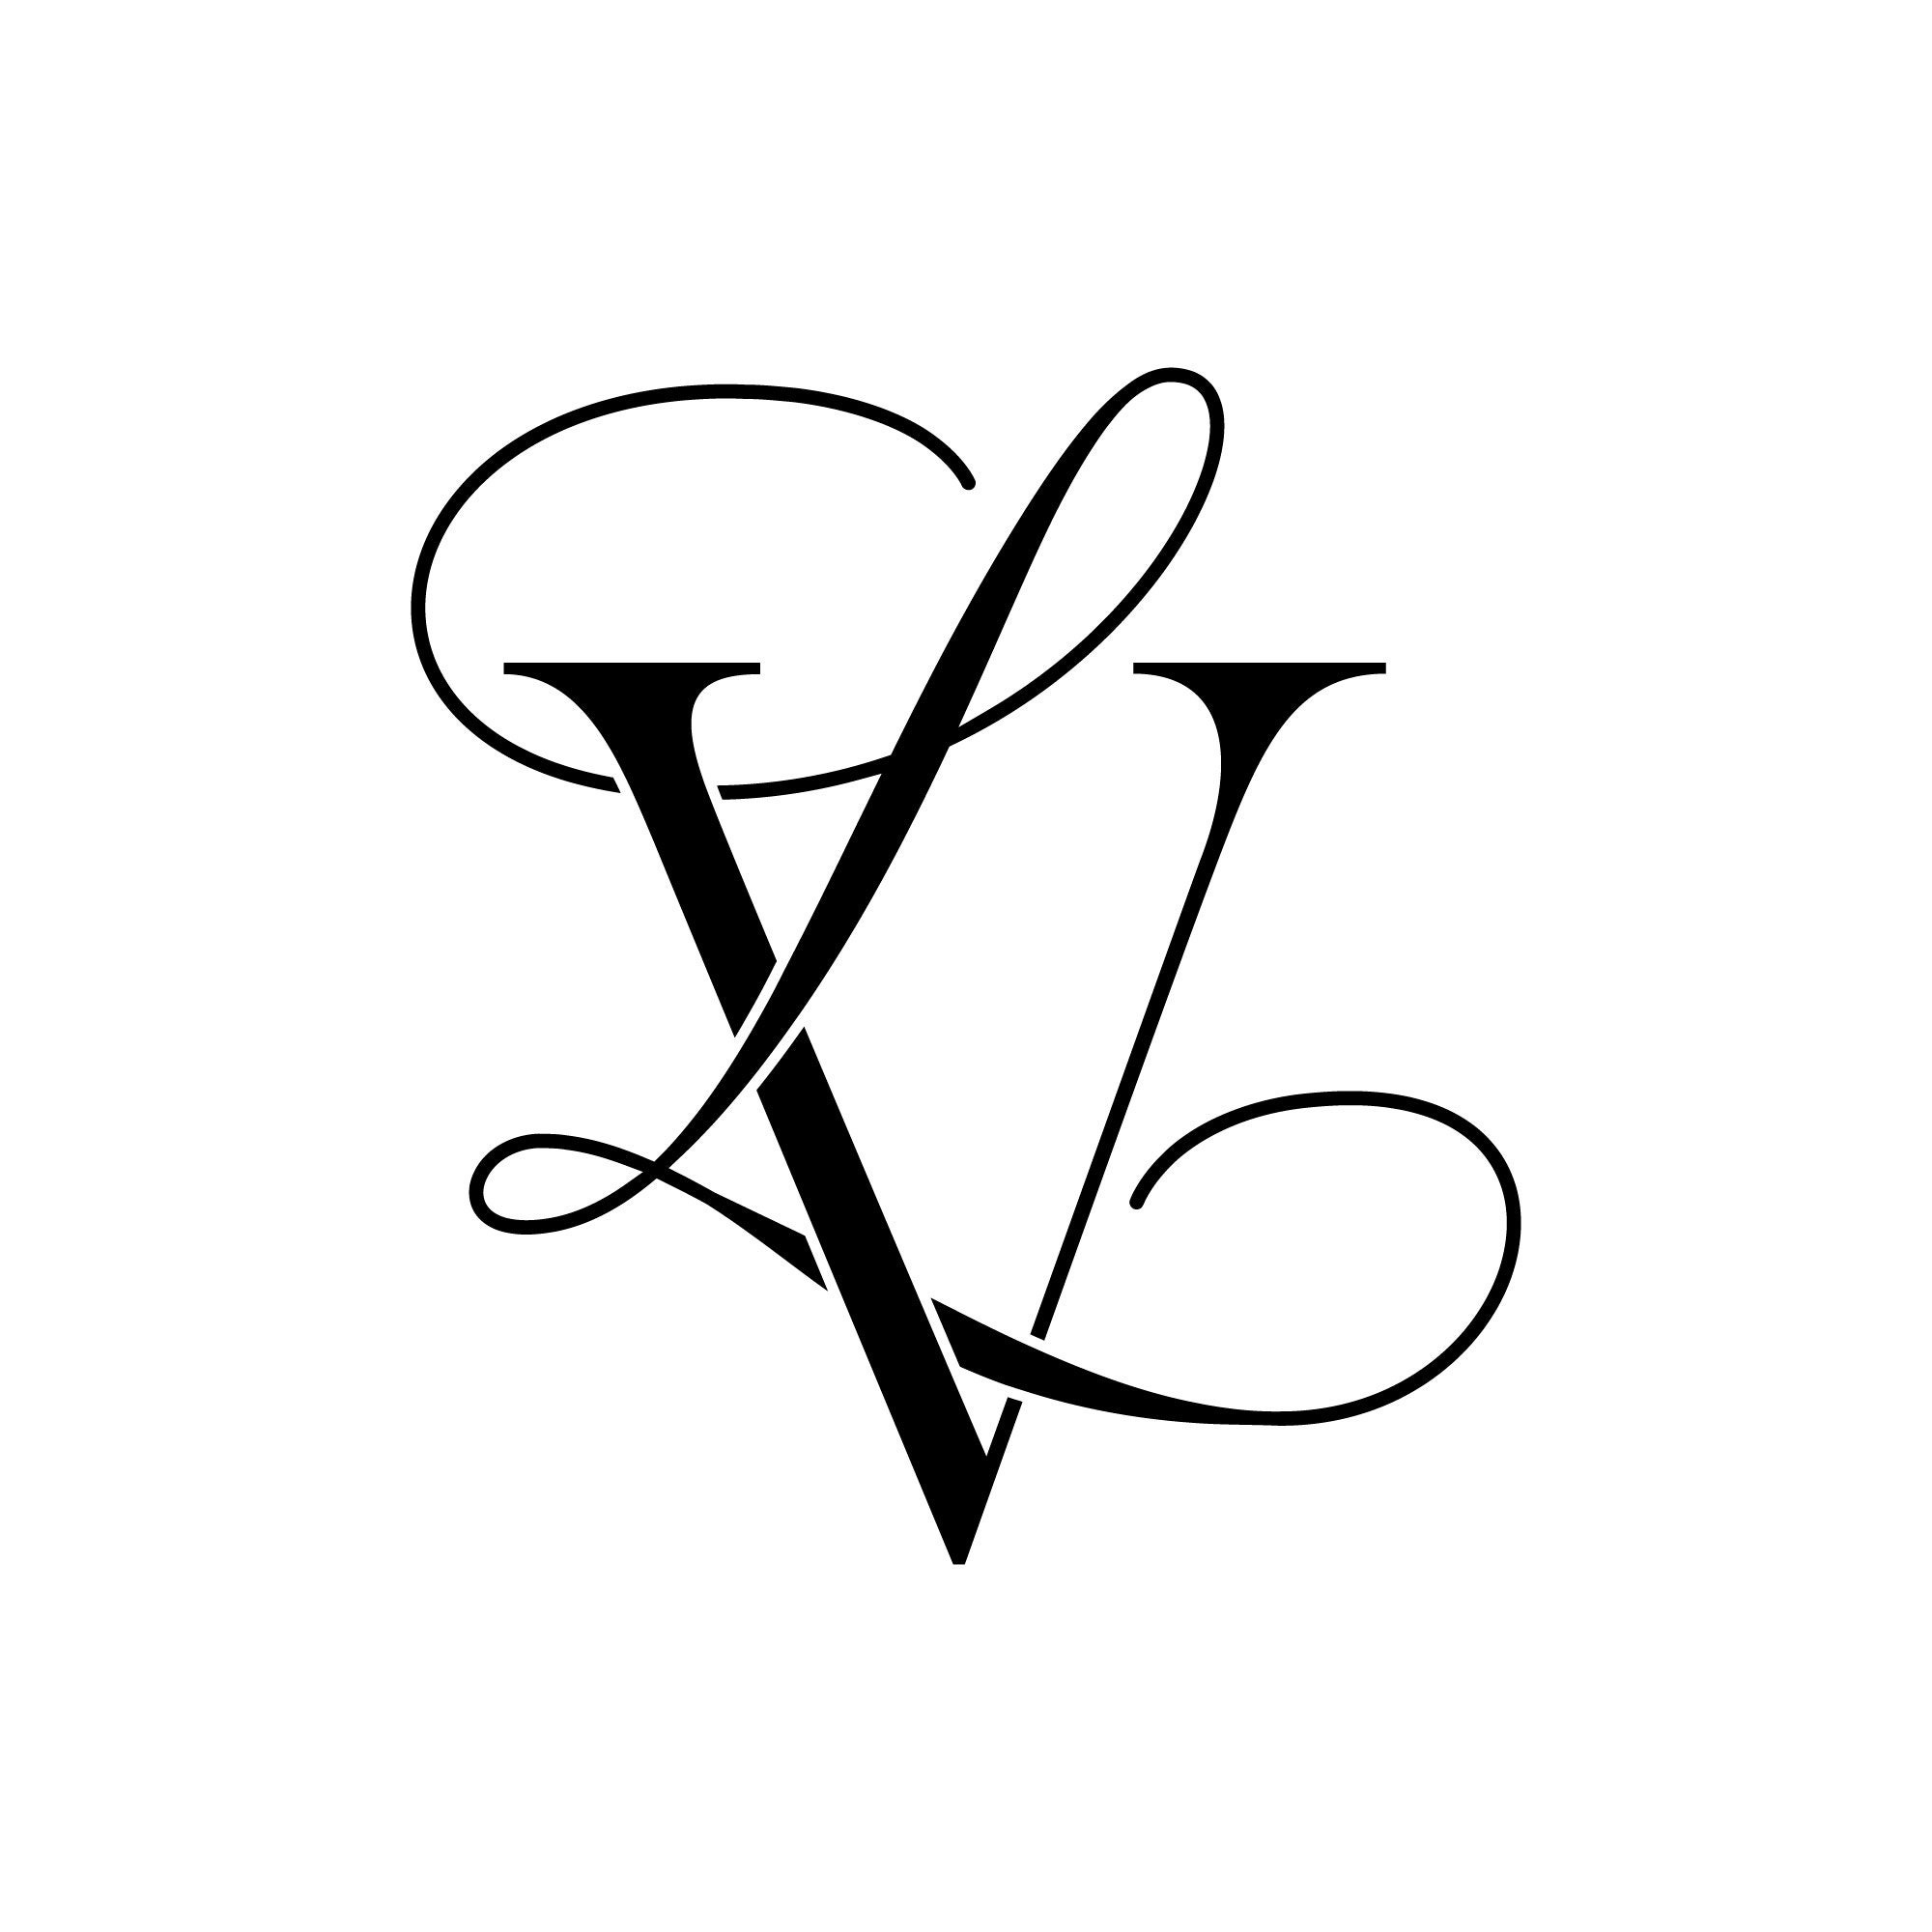 VL-LV Monogram Pillow